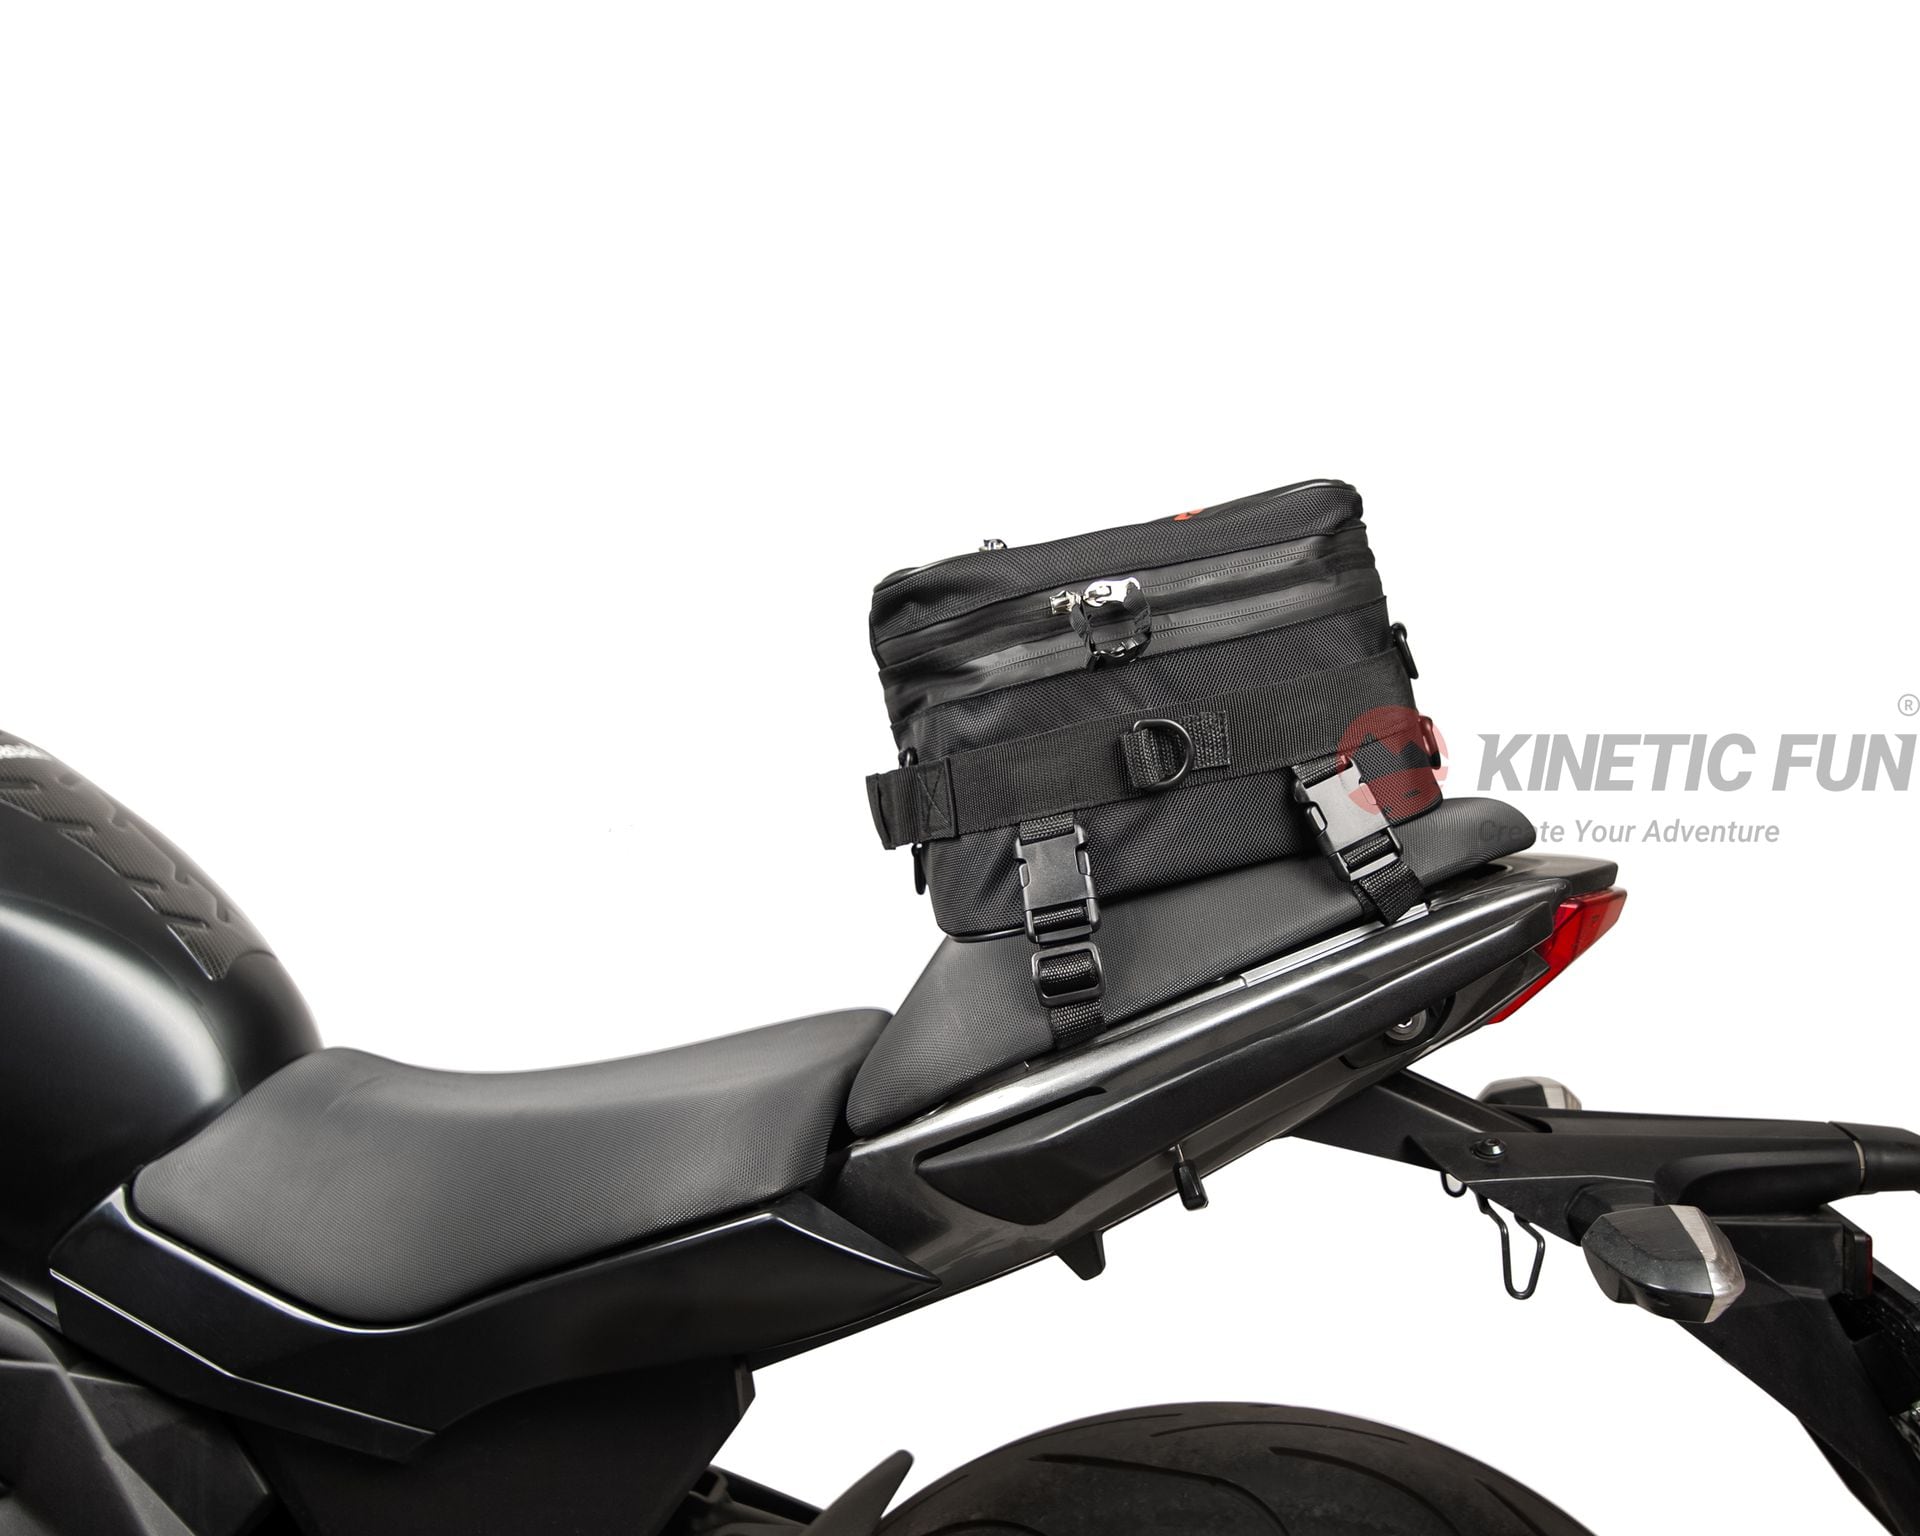 Сумка для мотоцикла Ducati MULTISTRADA 1260 S GRAND TOUR (EURO 4) - седельная Sportbike, объём 8-12 литров